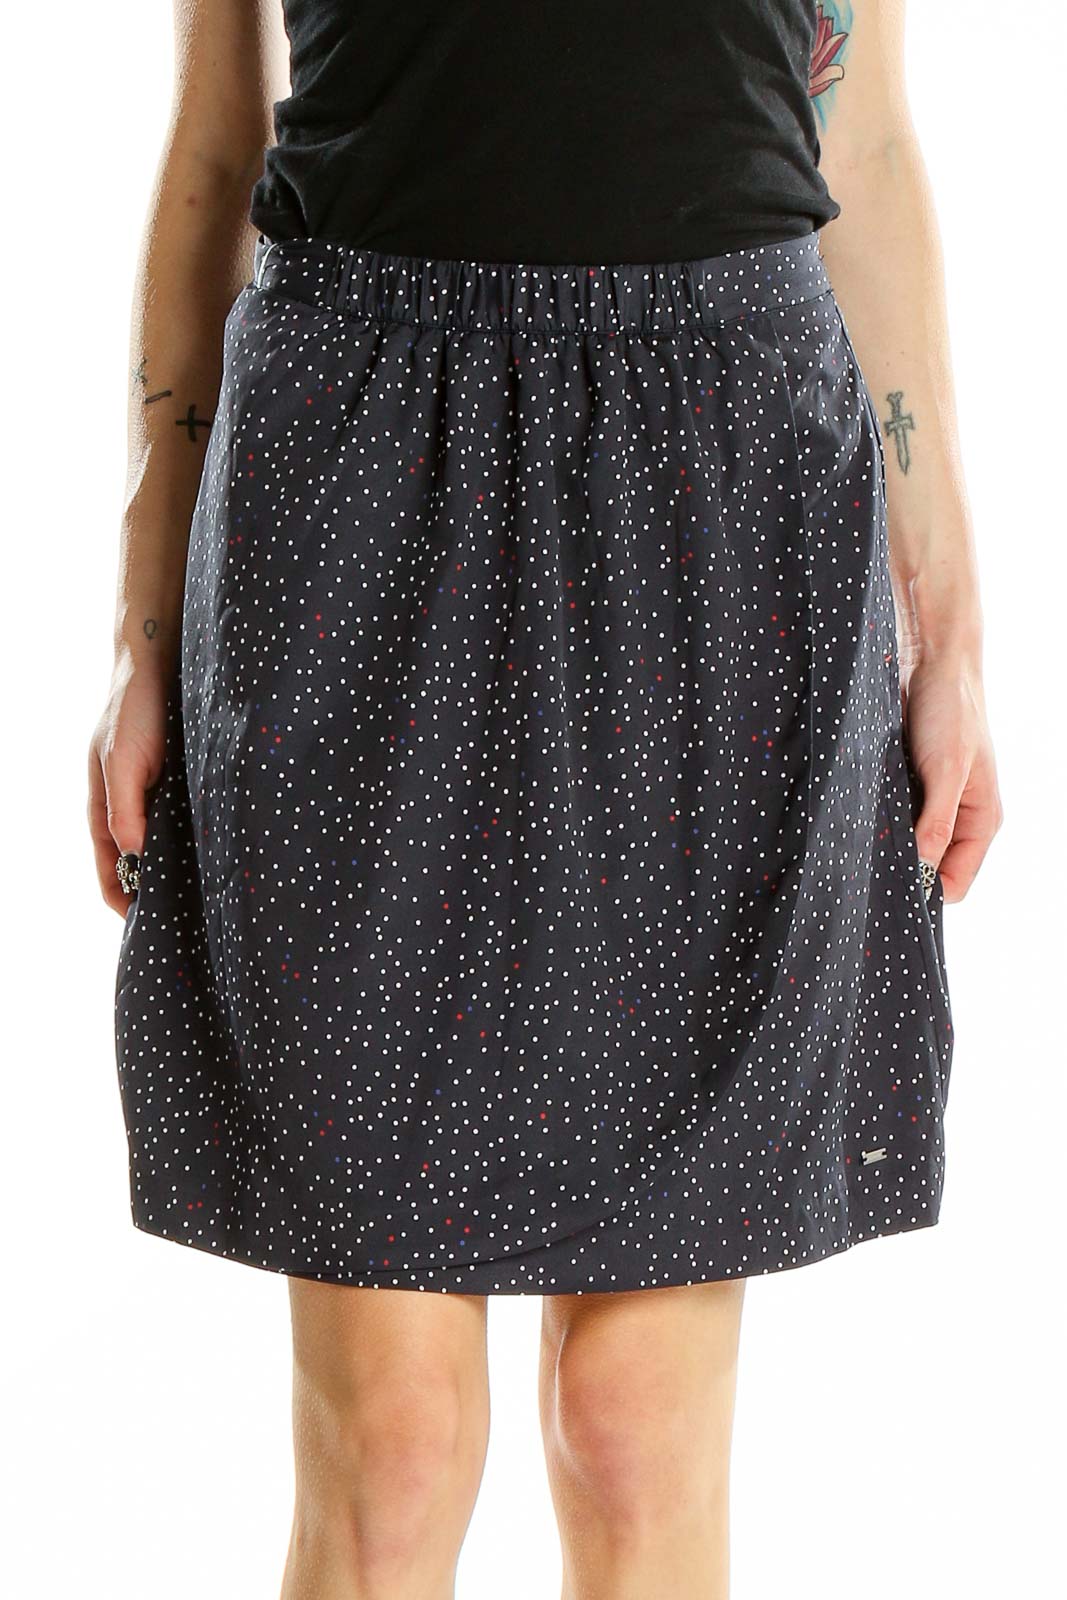 Blue Polka Dot Mini Skirt Front